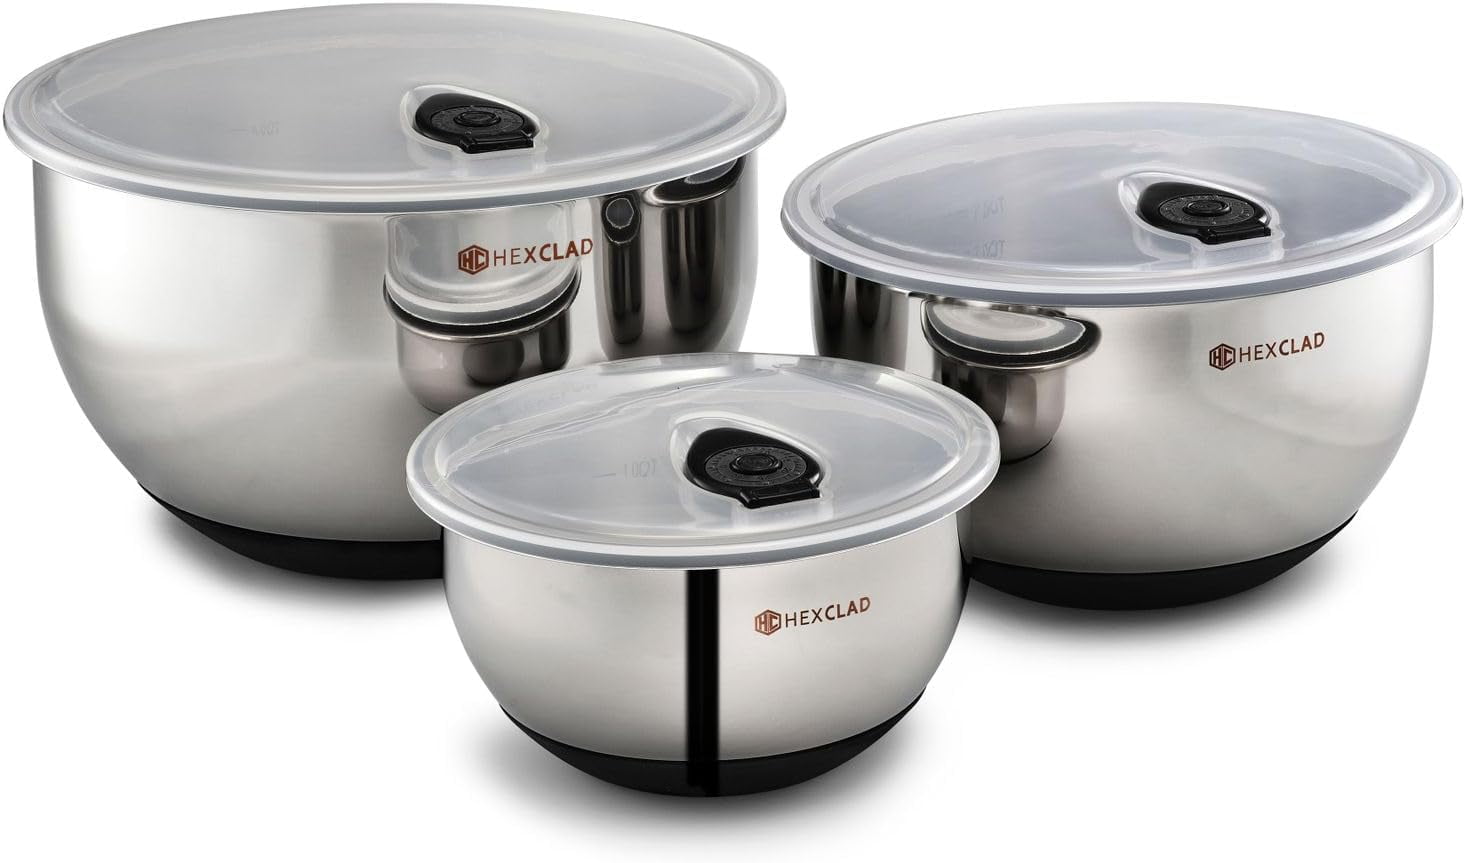 KitchenAid Set of 5 Mixing Bowls - Aqua Sky - 9755094